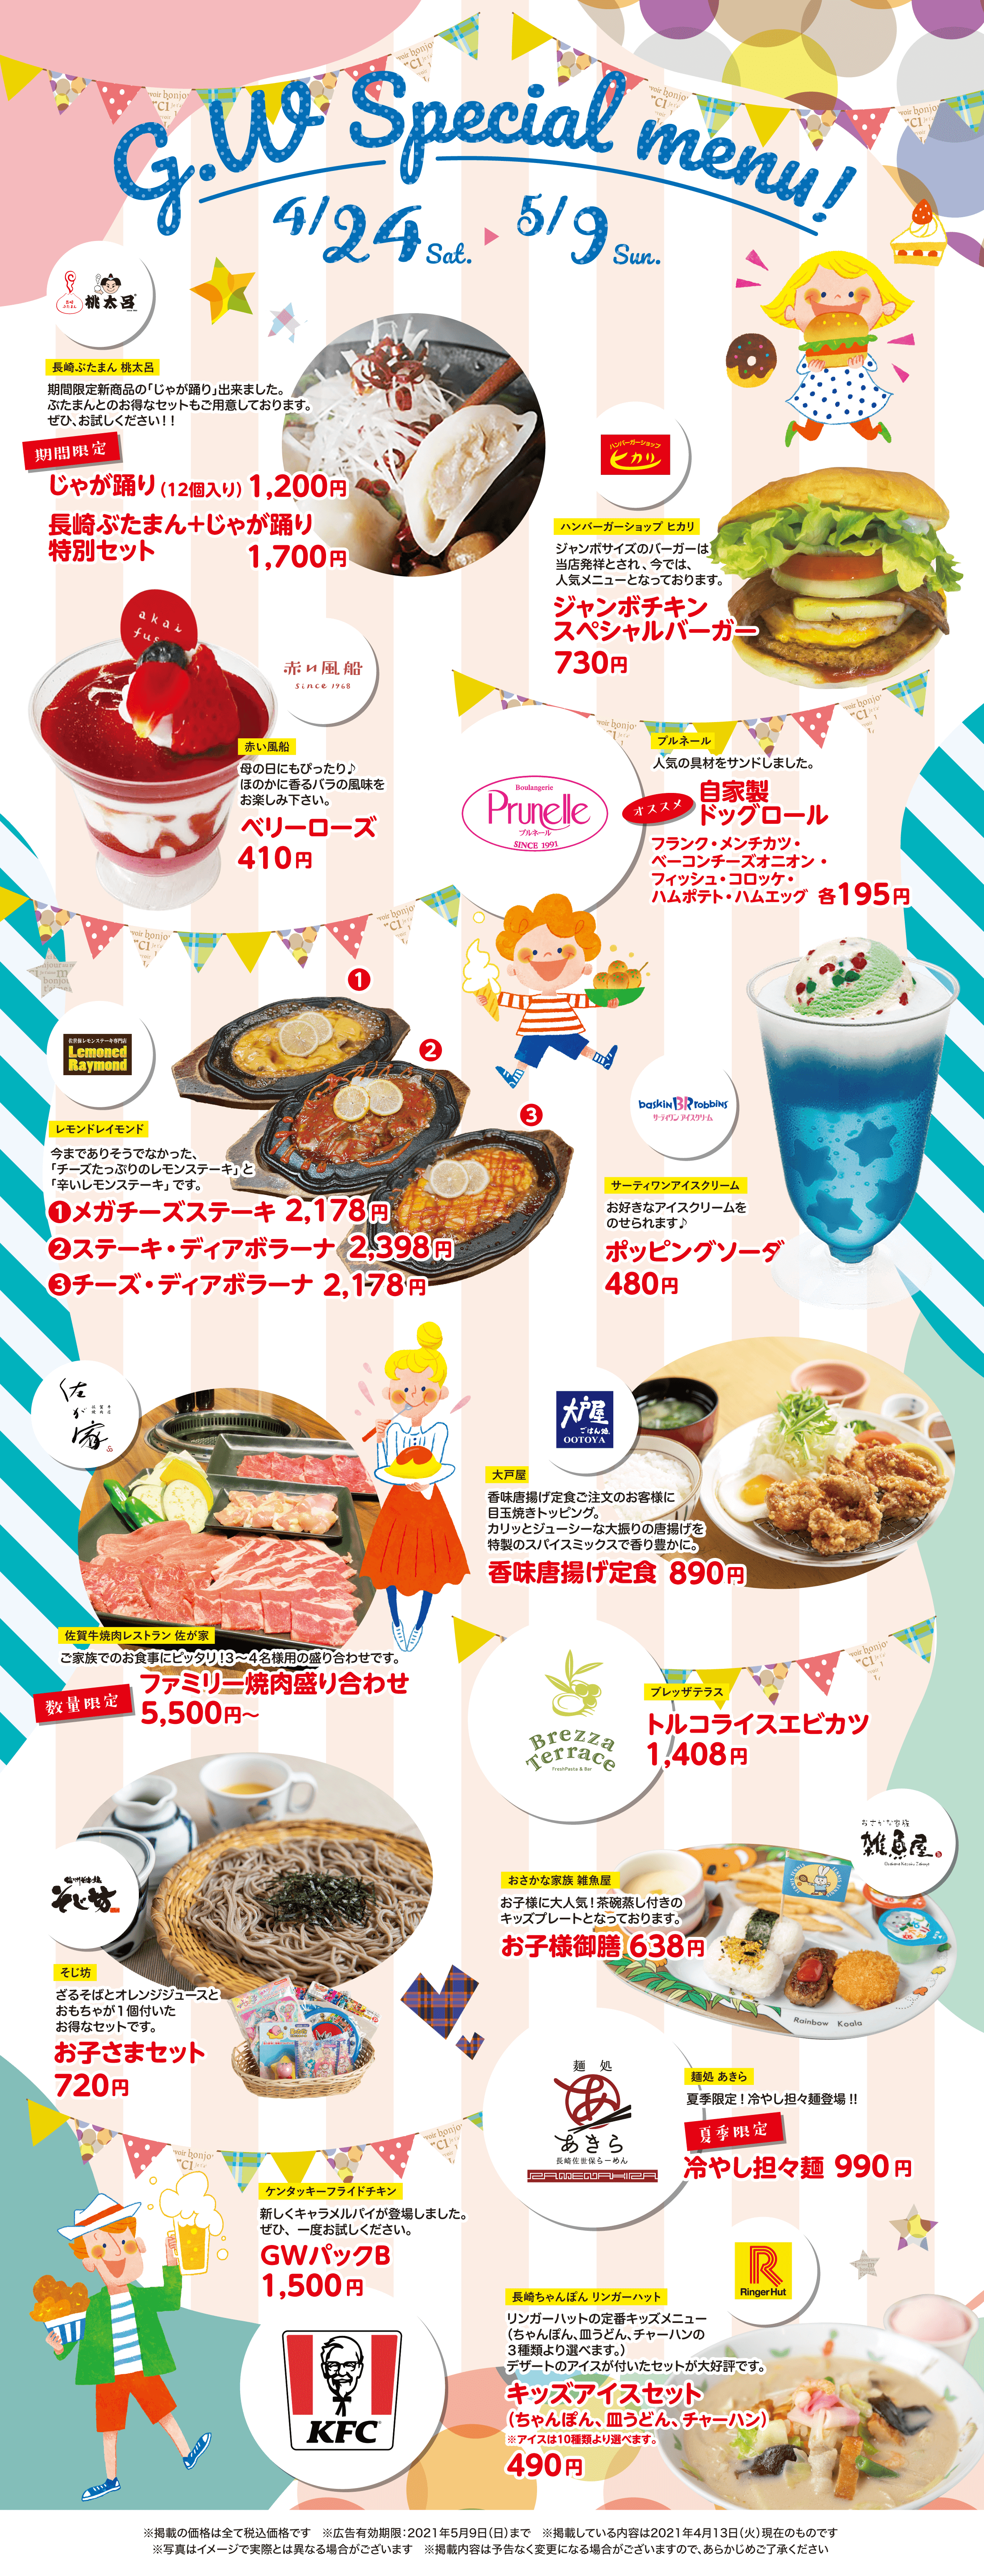 Sasebo Gobangai G.W special menu  4/24 Sat 〜5/9 Sun